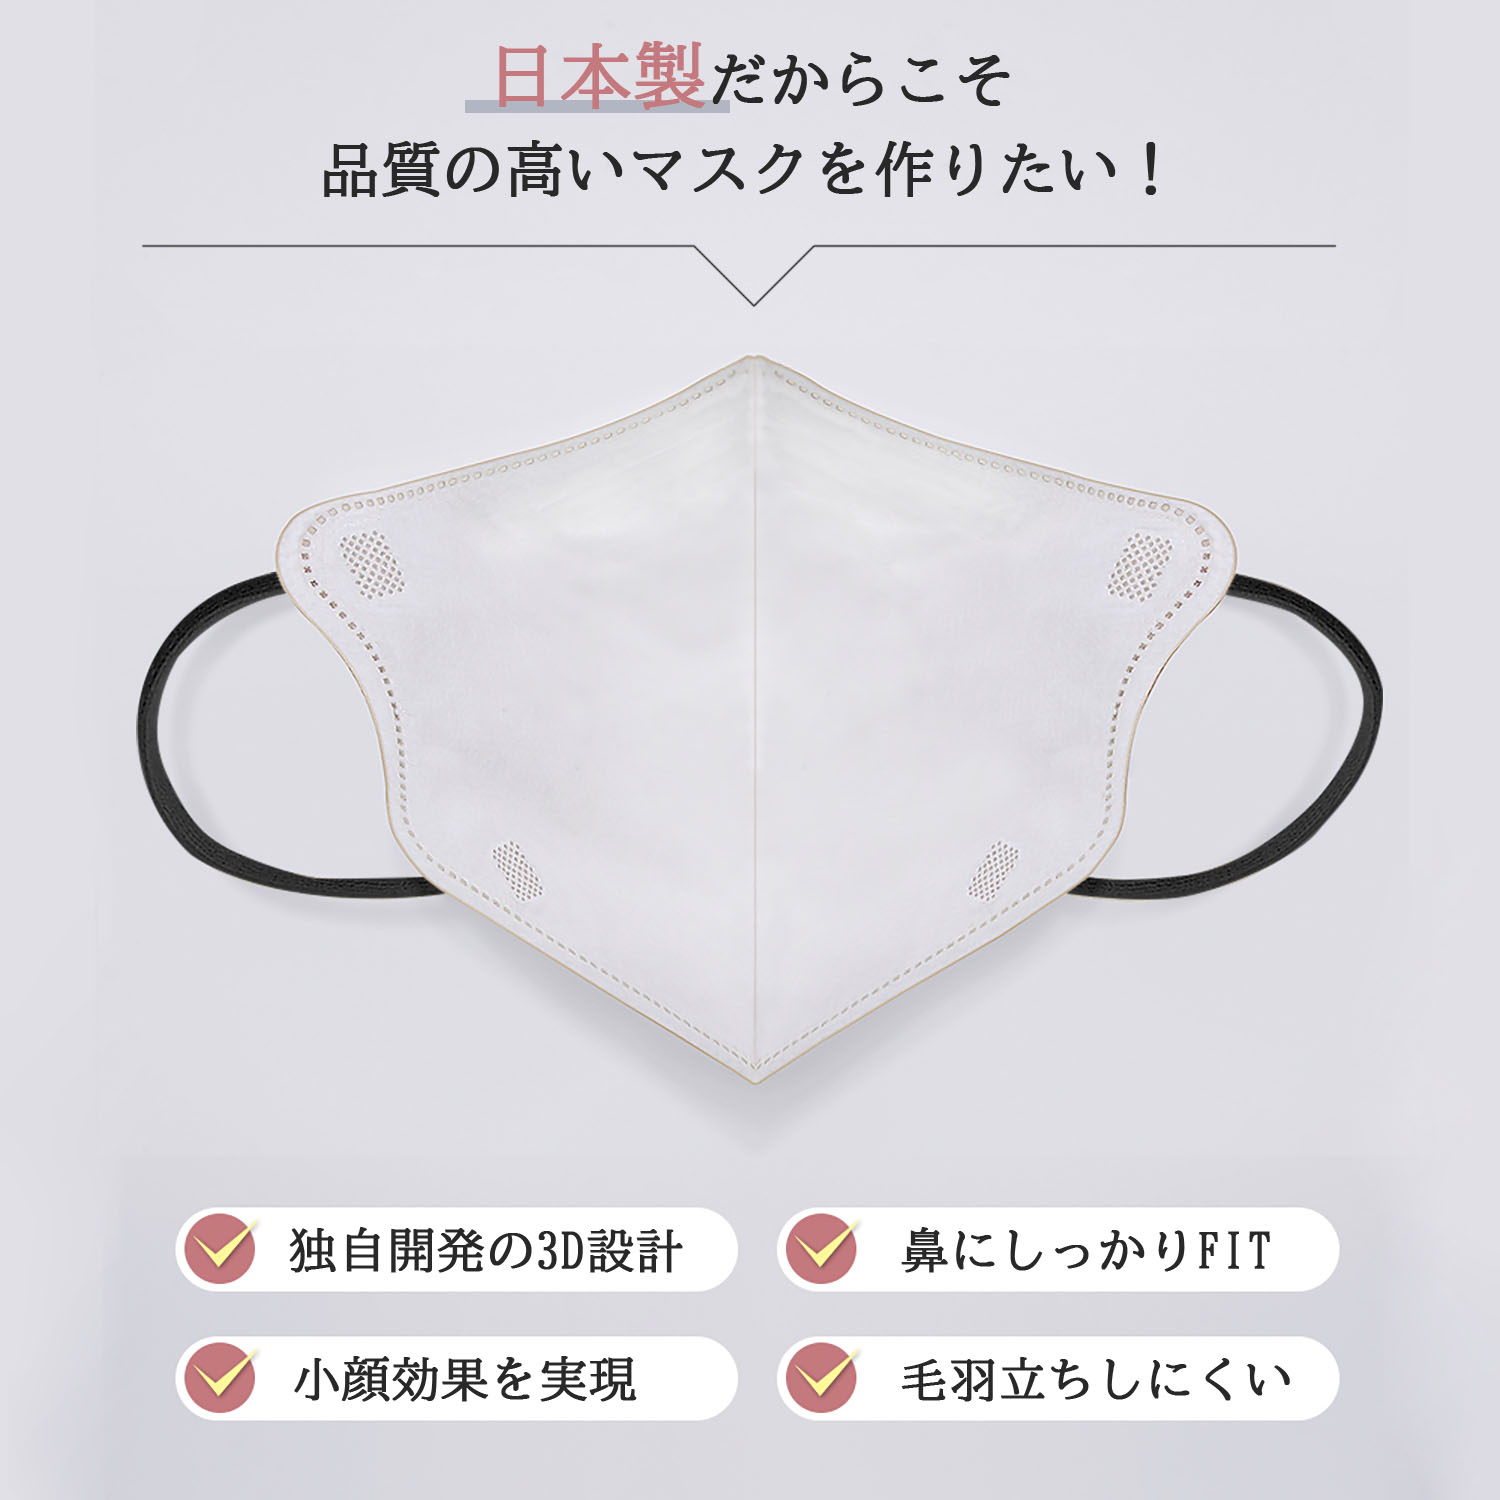 立体マスク 3D 不織布 日本製 カラー くちばし 10枚 小顔 使い捨て メガネが曇りにくい 呼吸しやすい 口紅に付かない 耳が痛くならない 熱中症対策917546